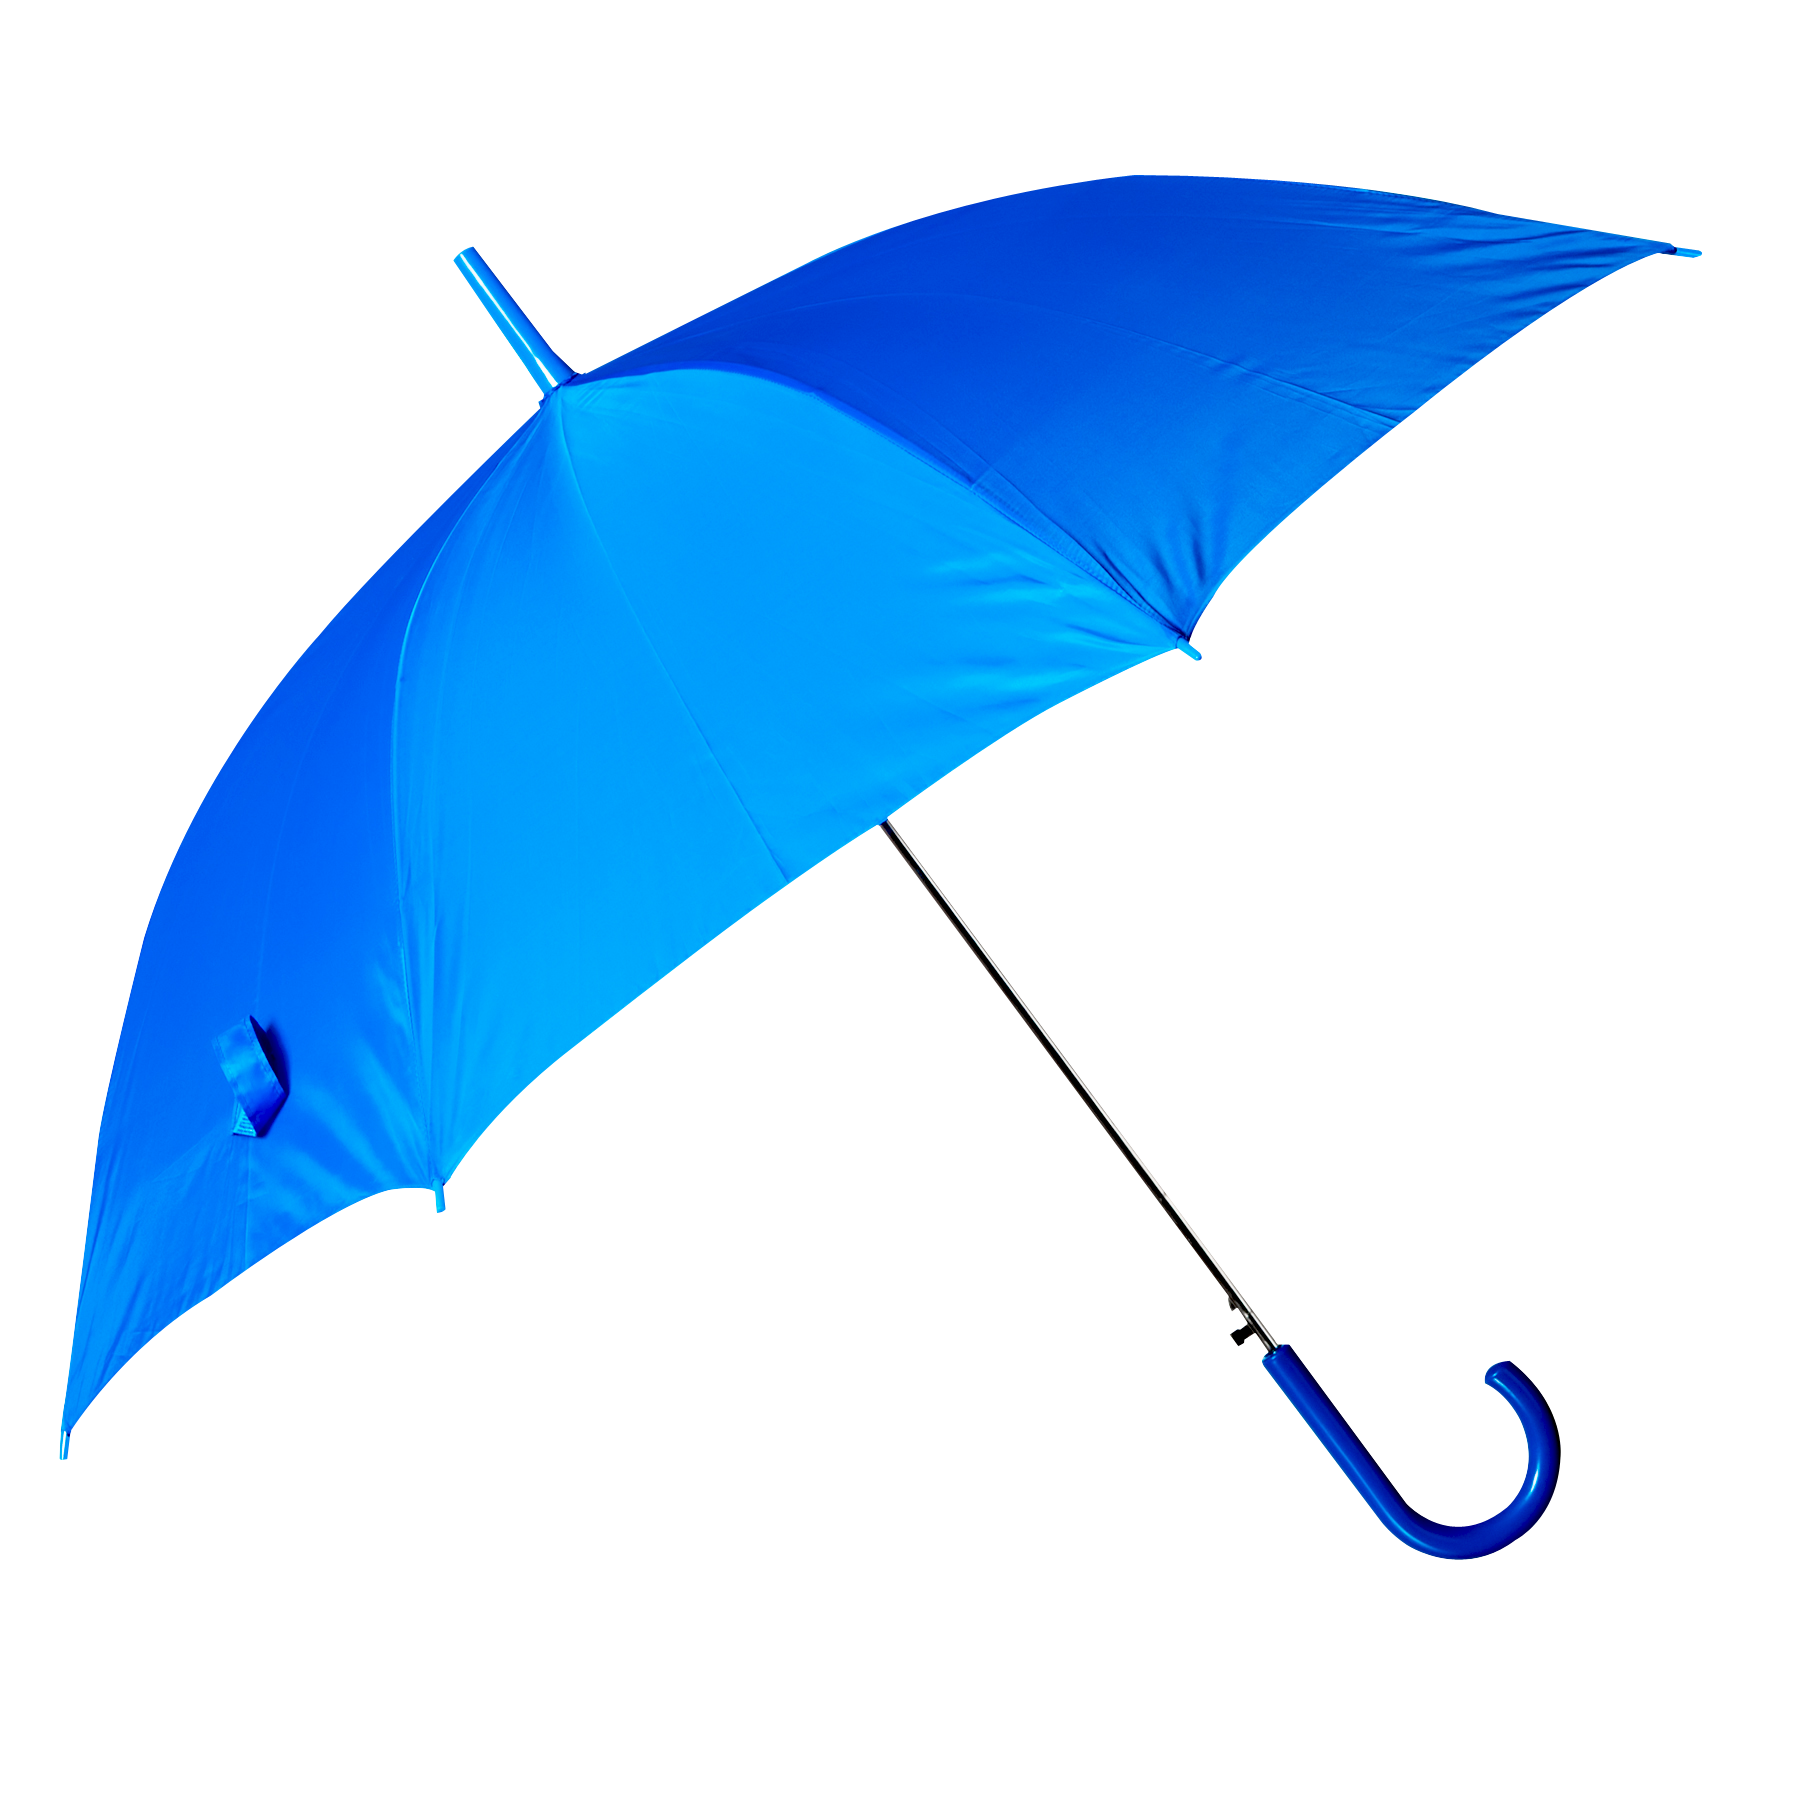 blue umbrella png image pngpix #18630